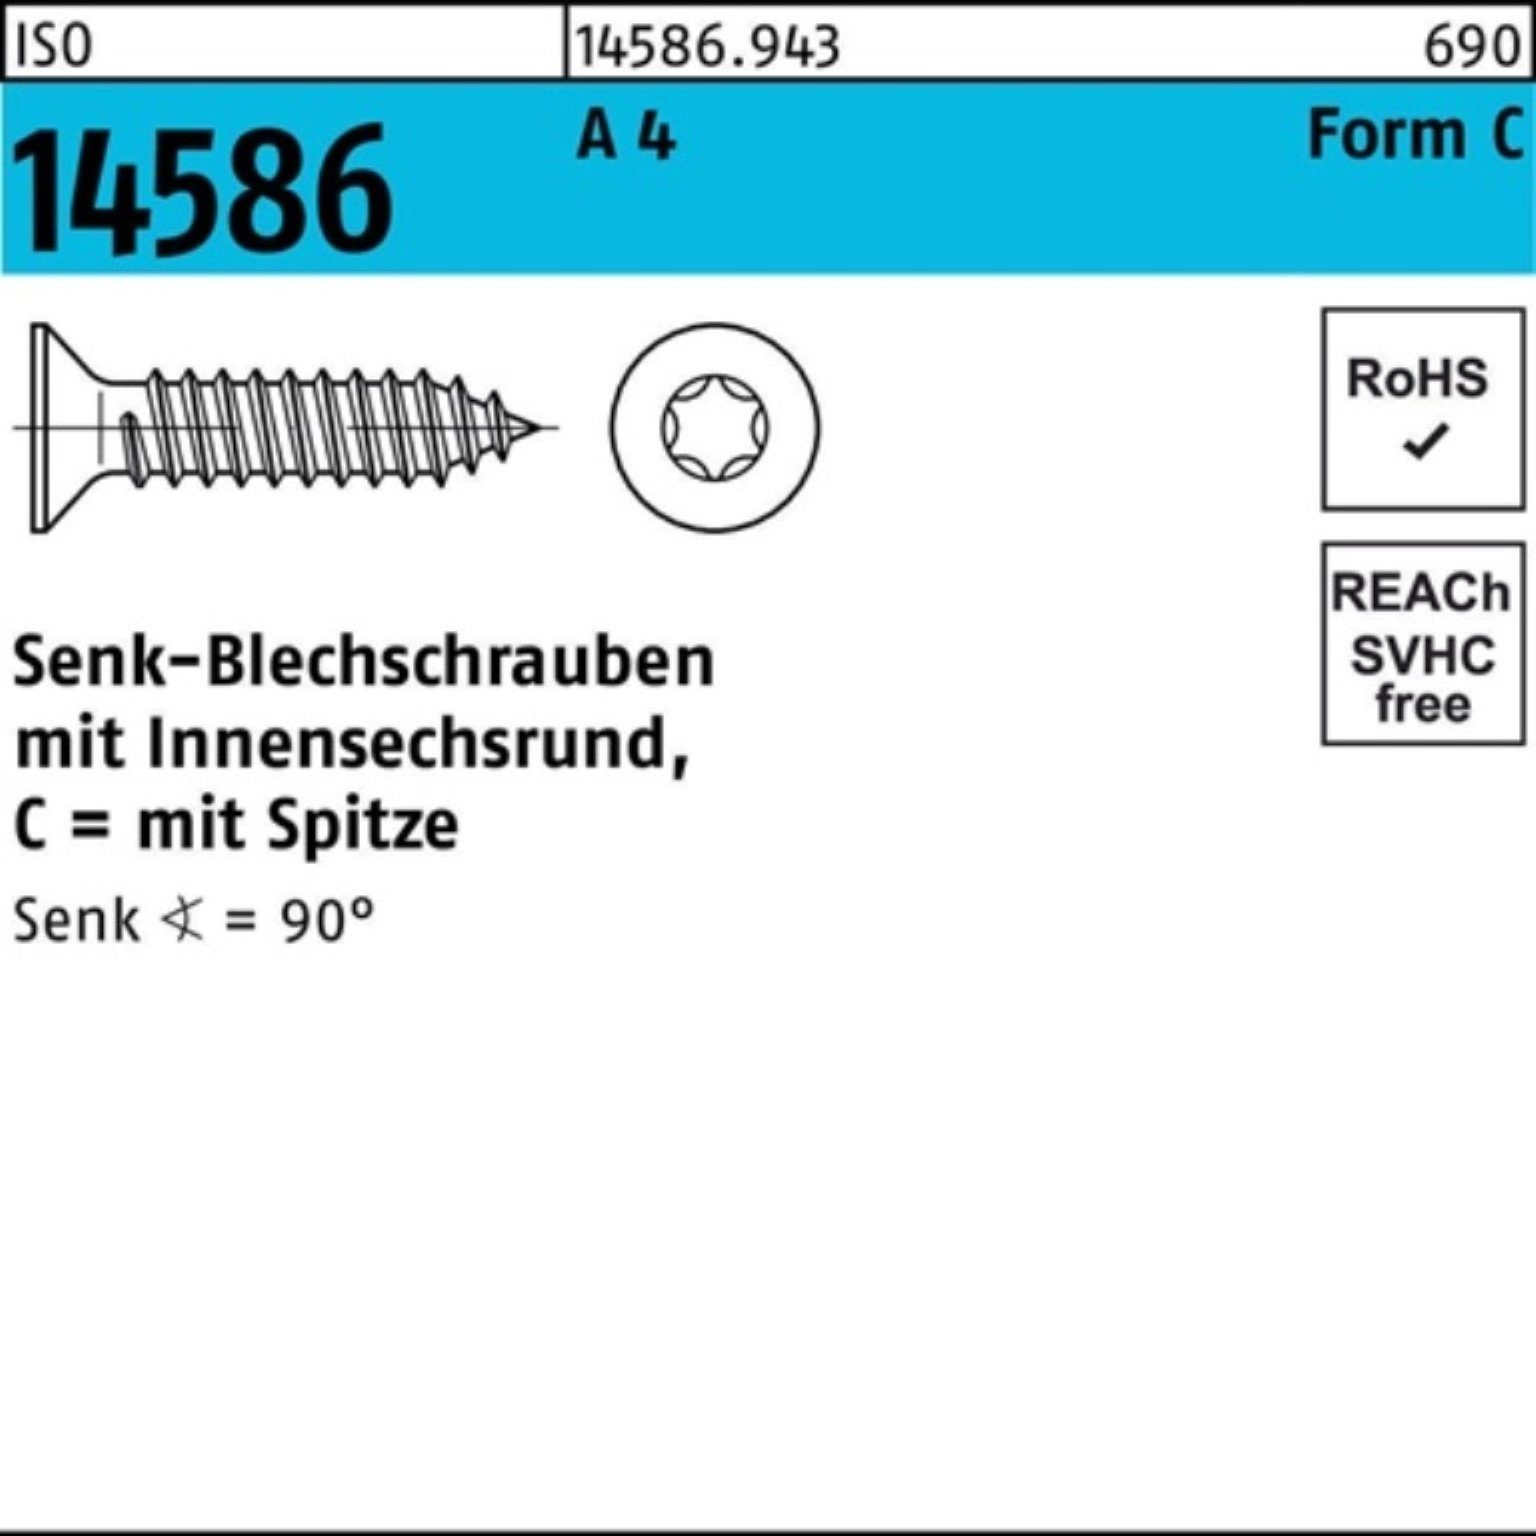 Reyher Schraube 500er Pack Senkblechschraube ISO 14586 ISR/Spitze 3,9x 50-T15 A 4 500